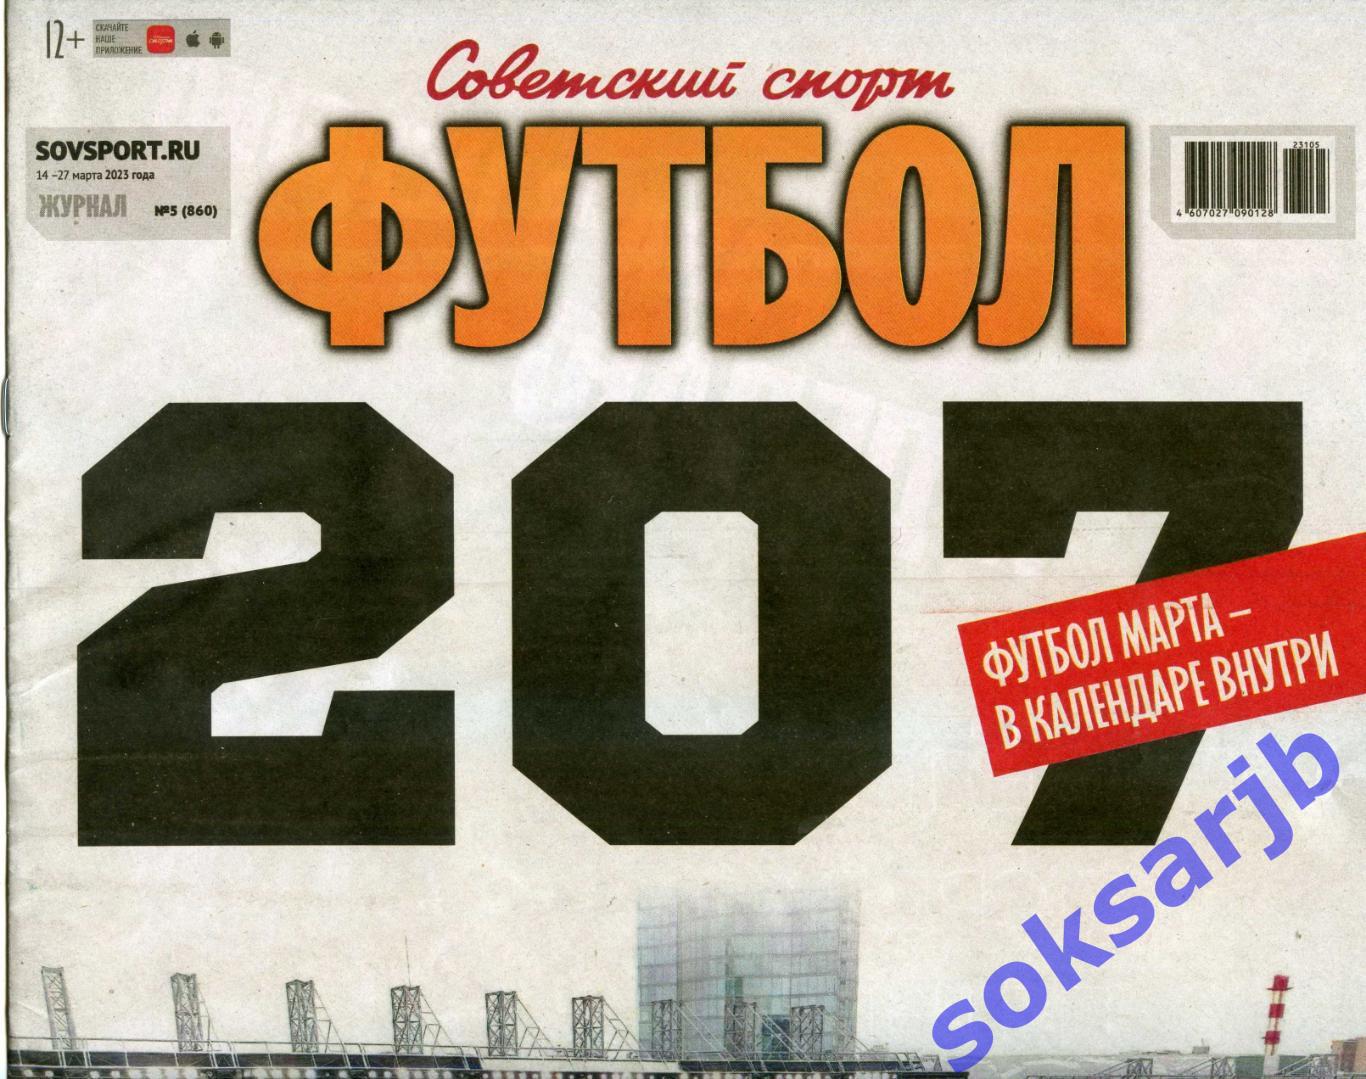 2023. Еженедельник Советский спорт - Футбол № 5 (860).